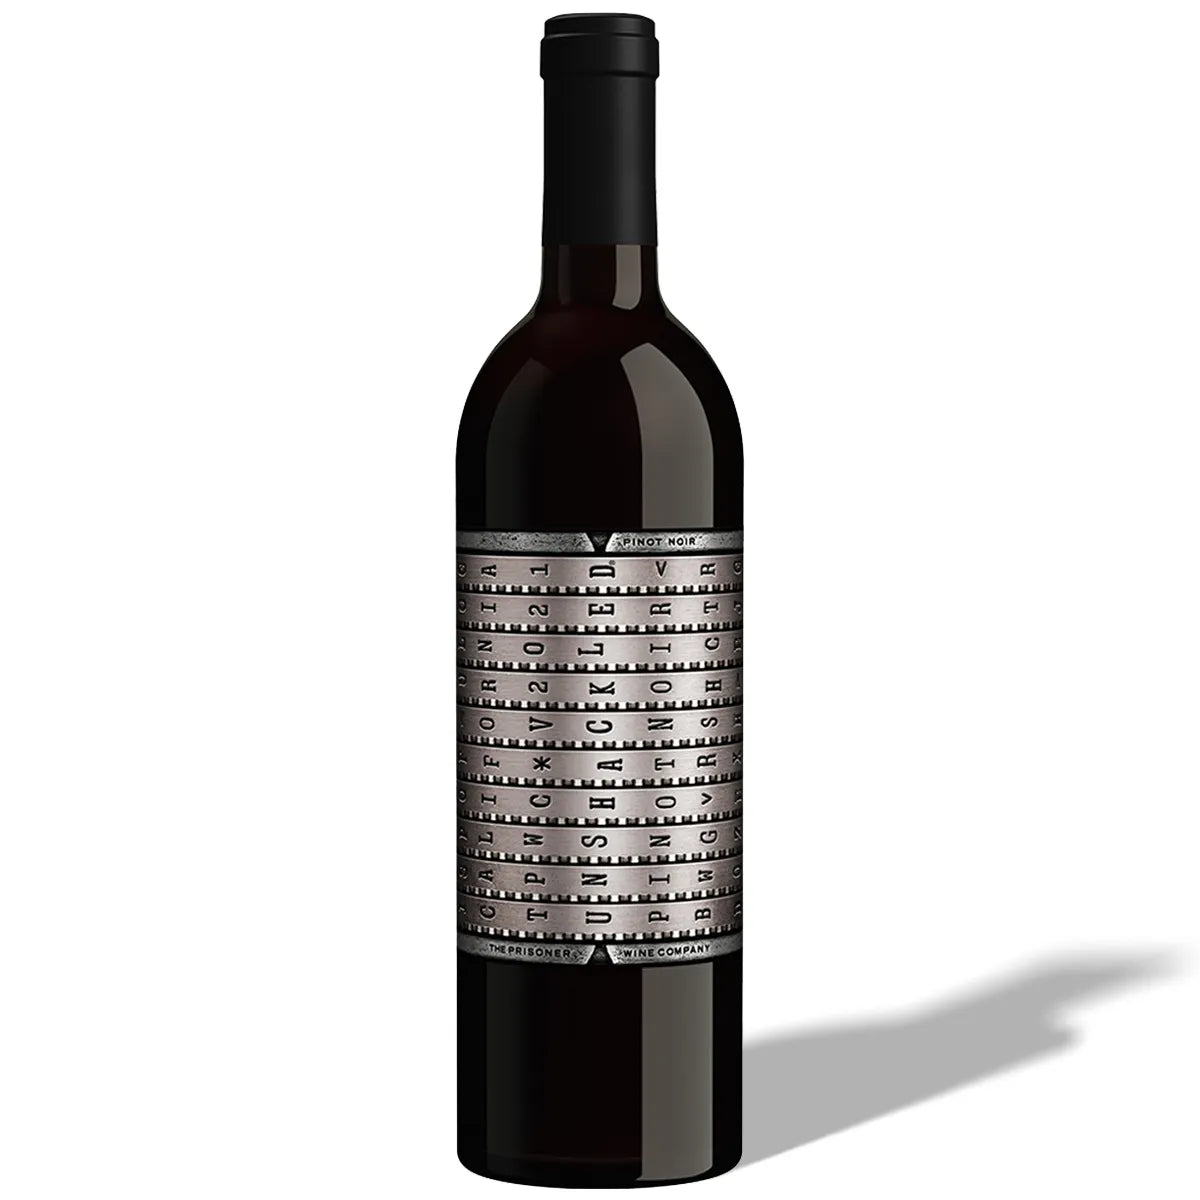 The Prisoner Wine Company Unshackled Pinot Noir 750ml Single Bottle